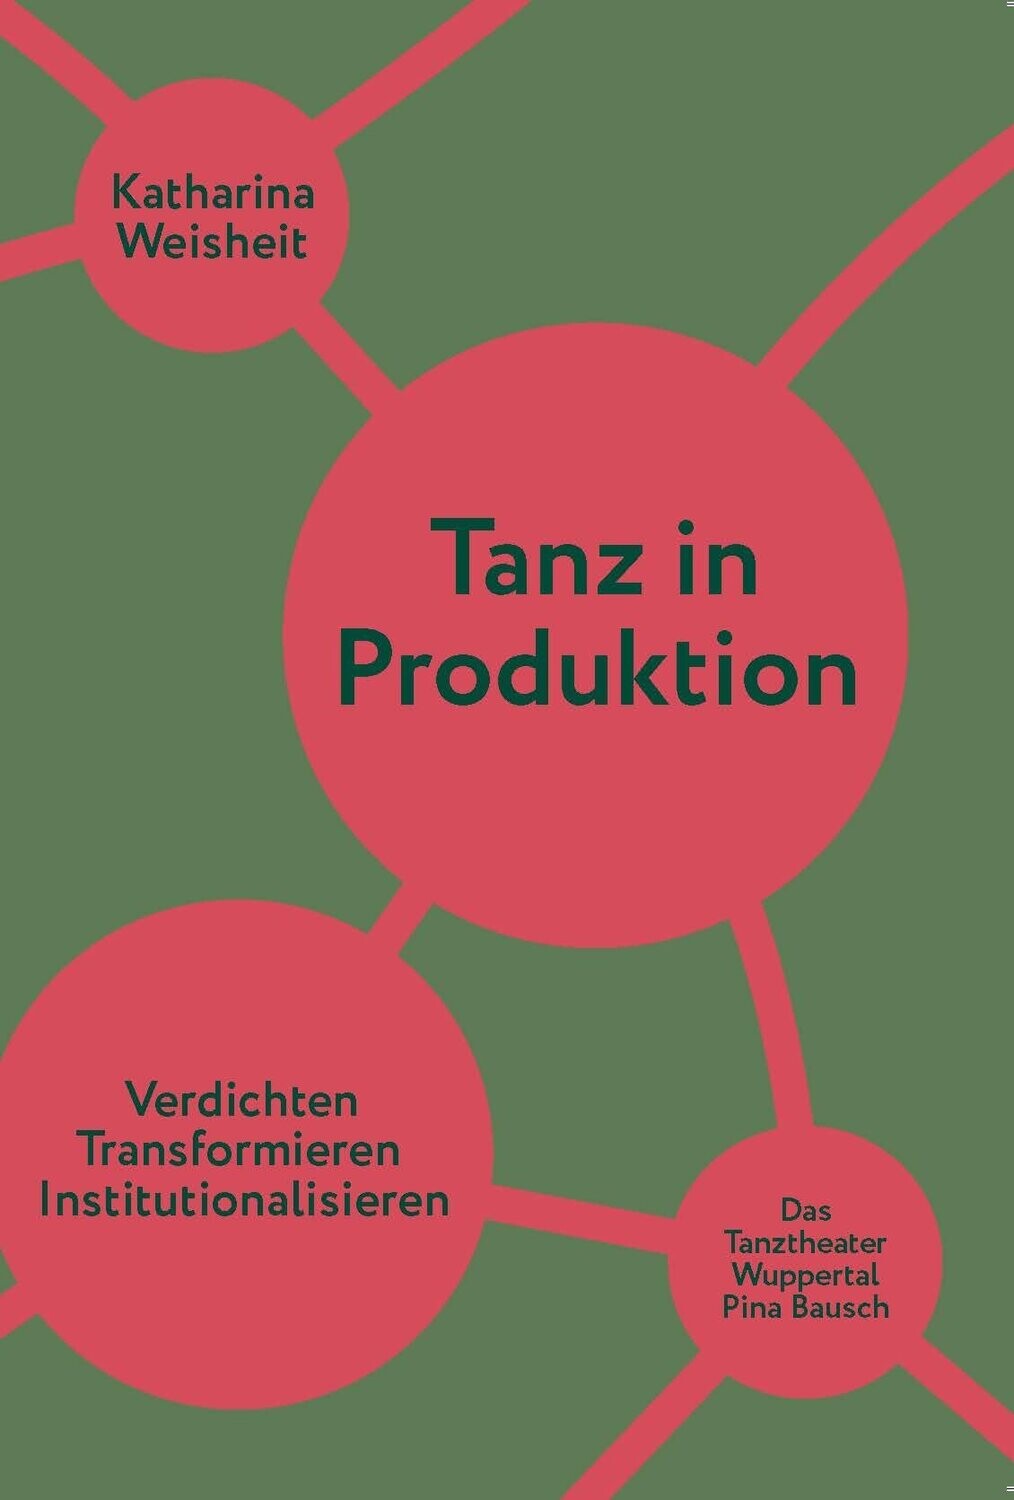 Katharina Weisheit: Tanz in Produktion